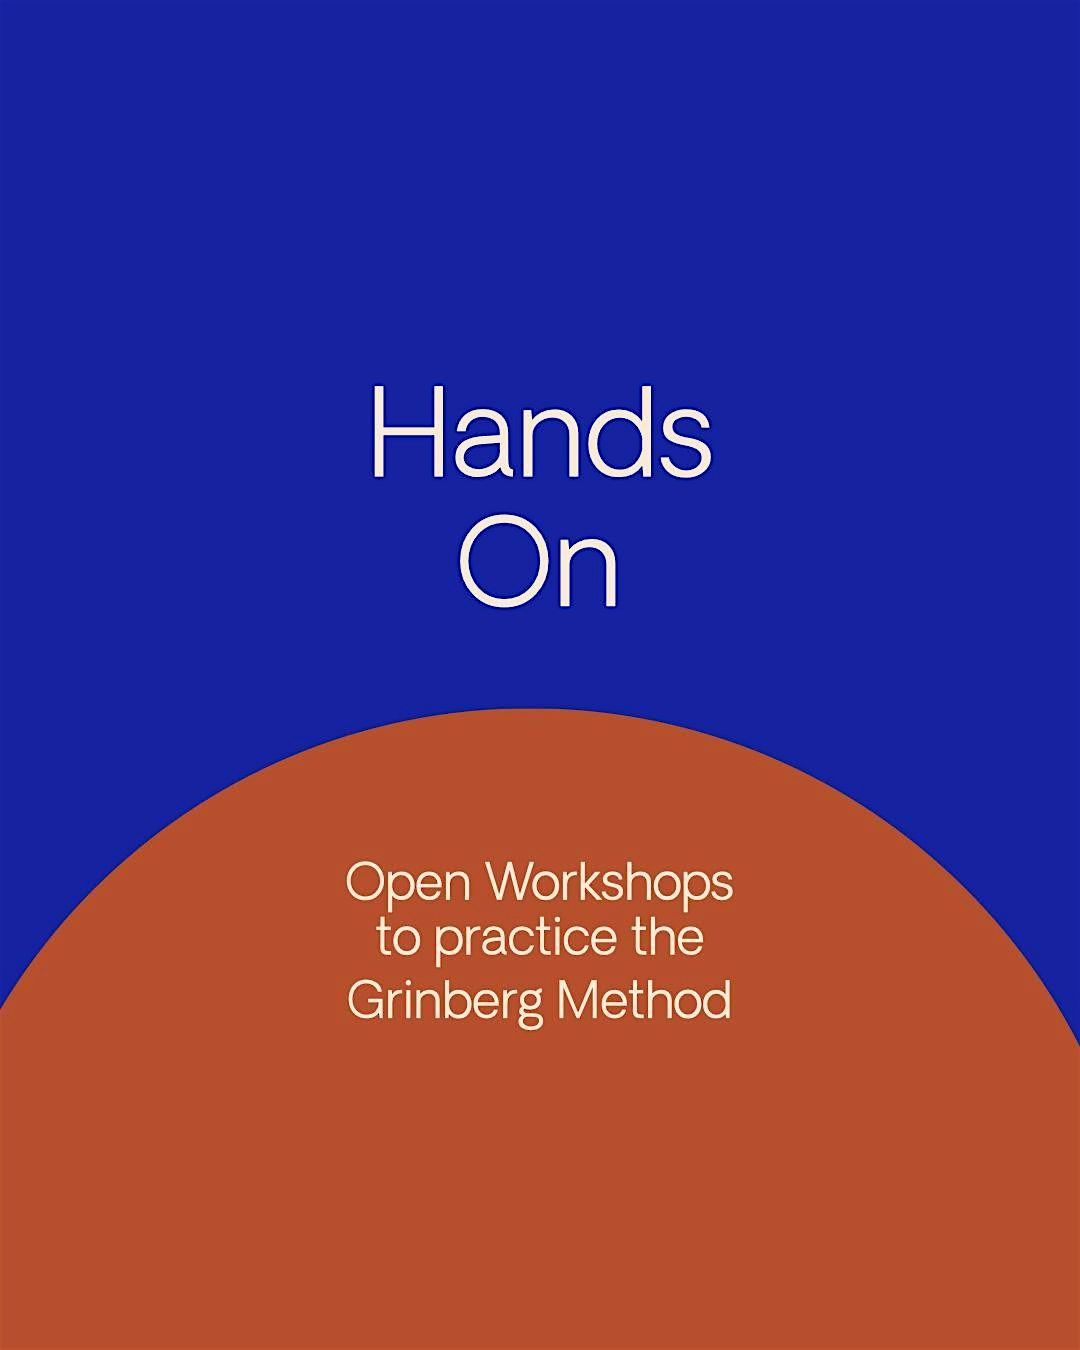 Hands On workshop Grinberg Method